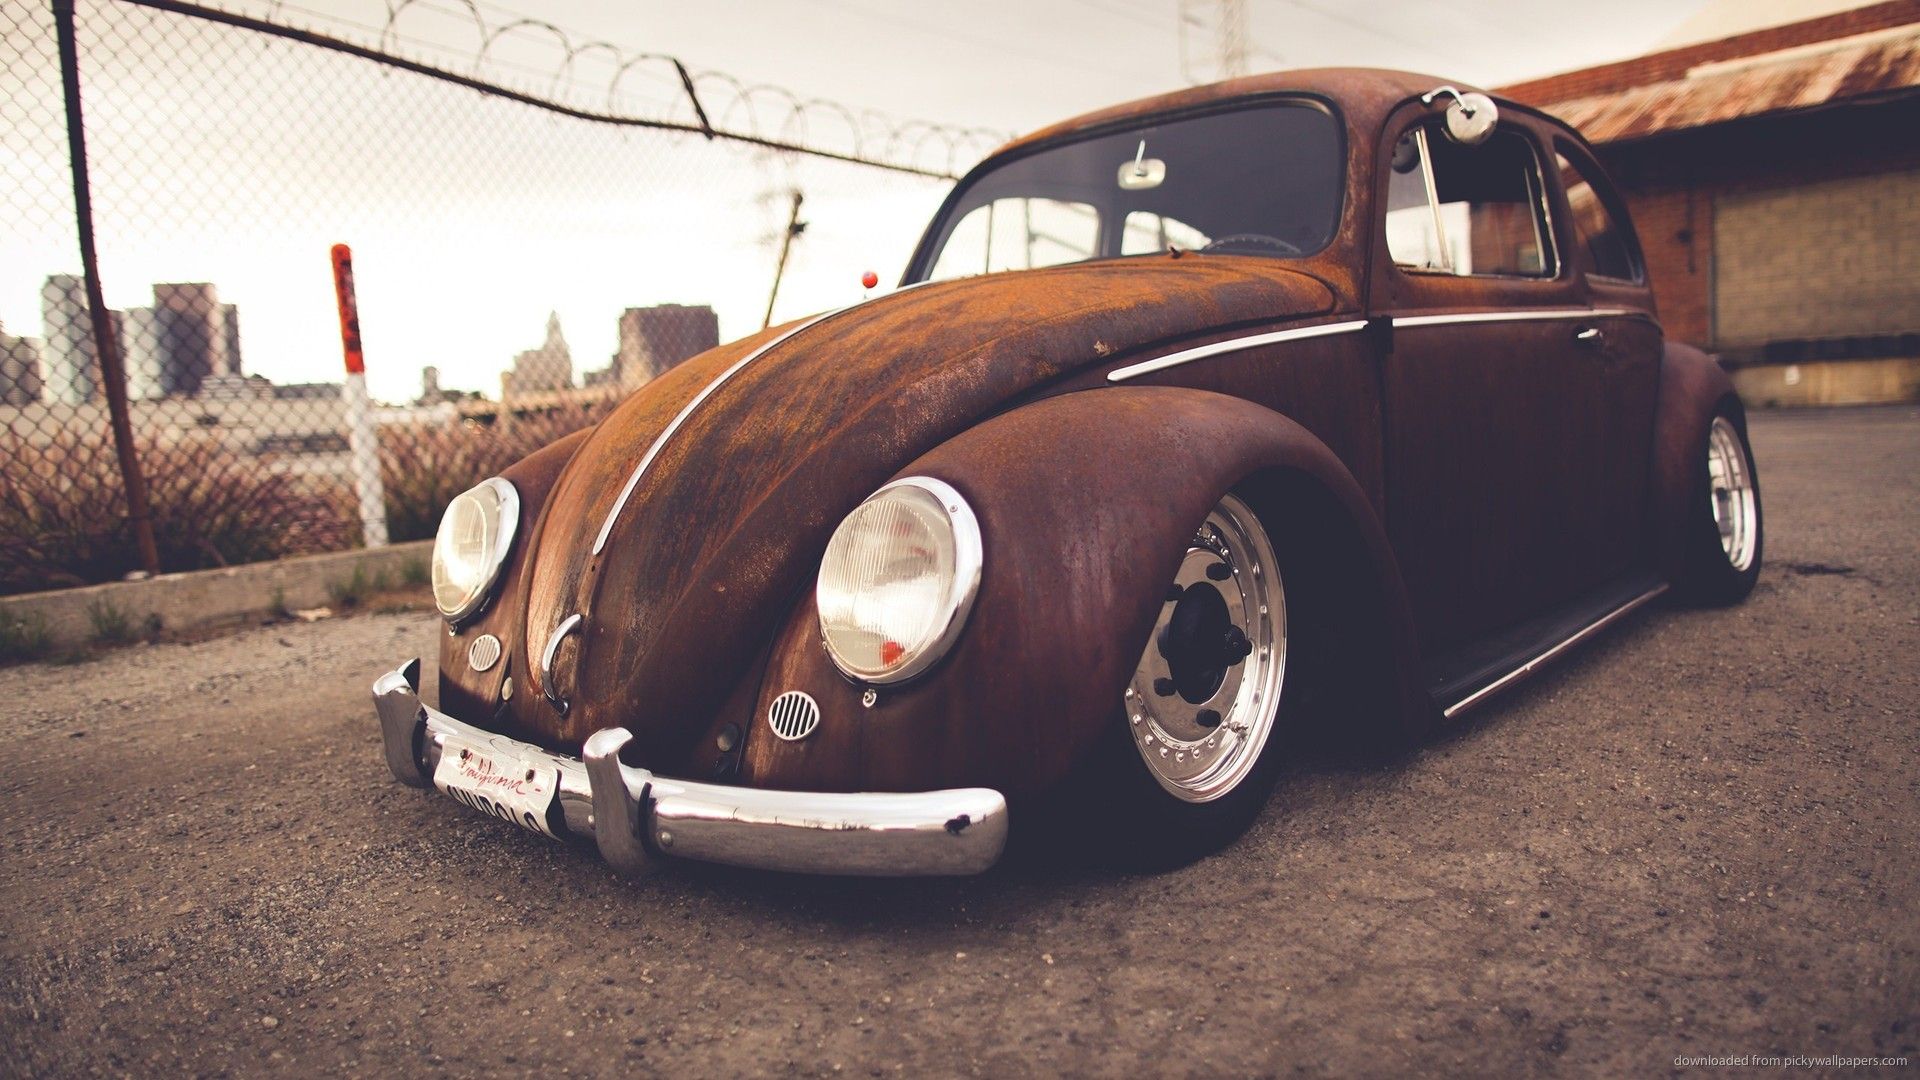 Rusty Volkswagen Beetle Cabriolet wallpaper. Volkswagen new beetle, Car wallpaper, Vintage cars